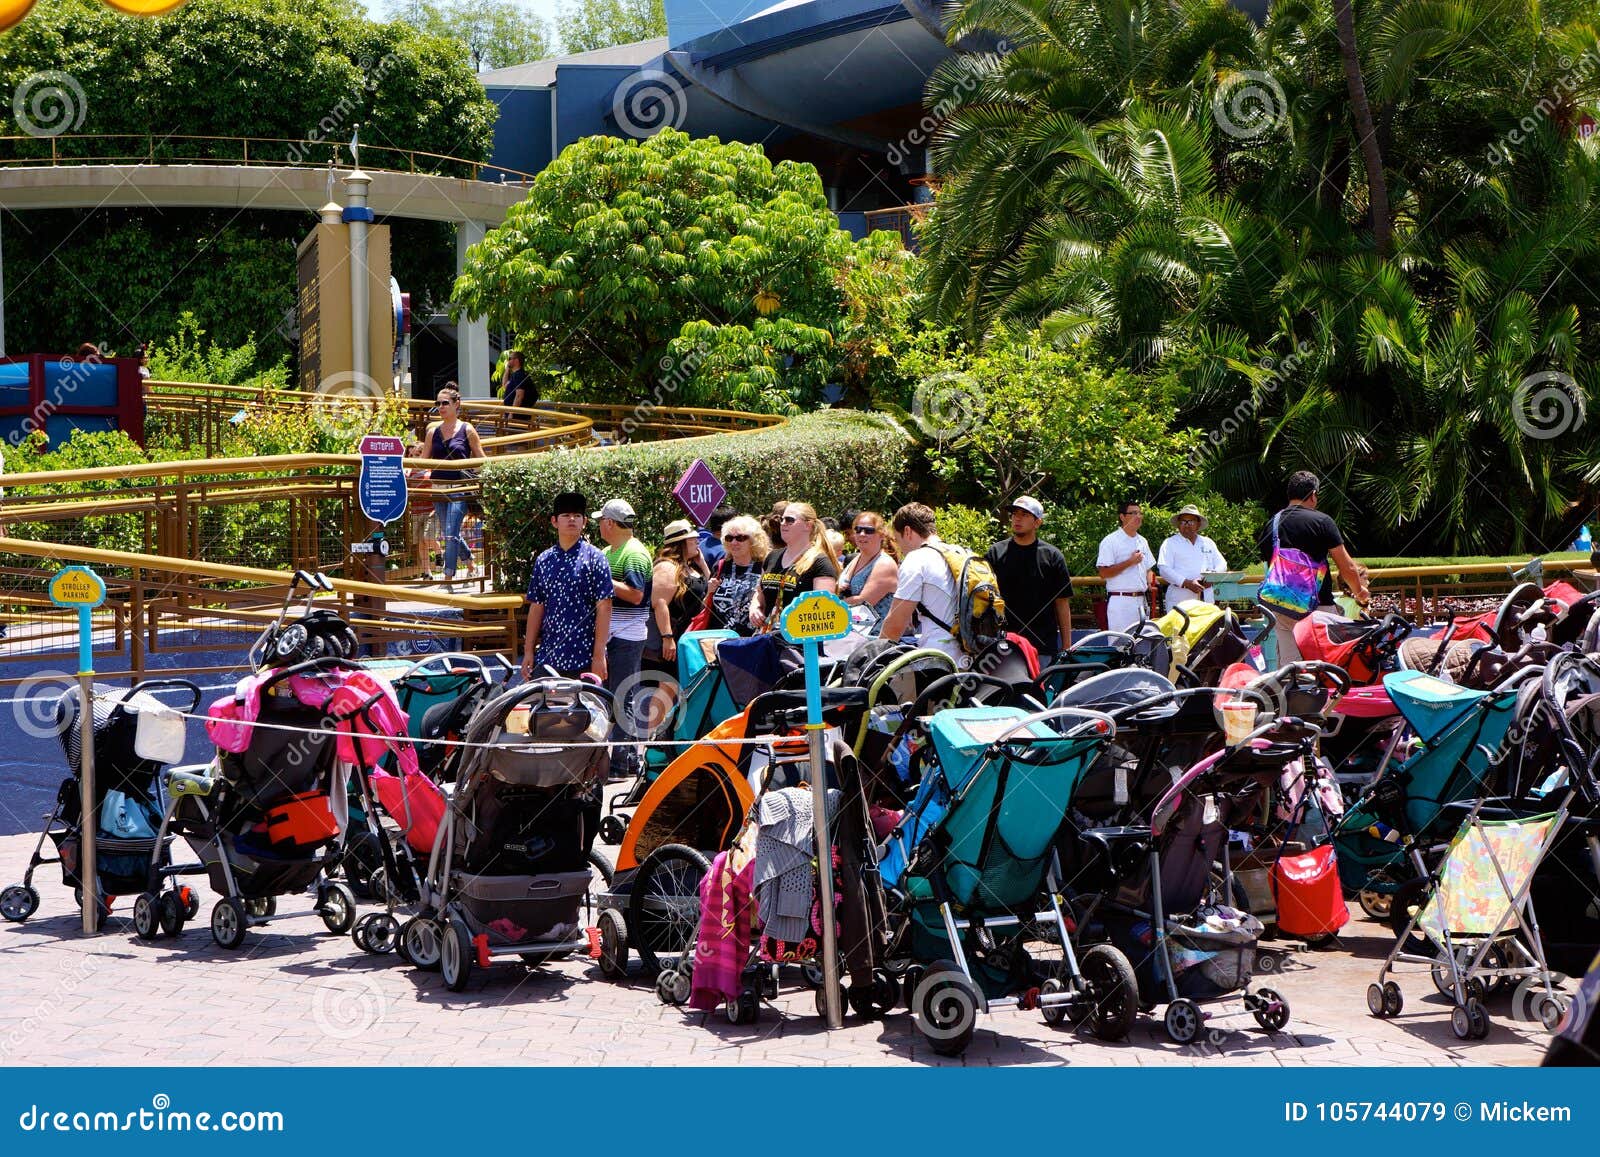 Disneyland Stroller Parking Editorial Stock Image - Image of line, park